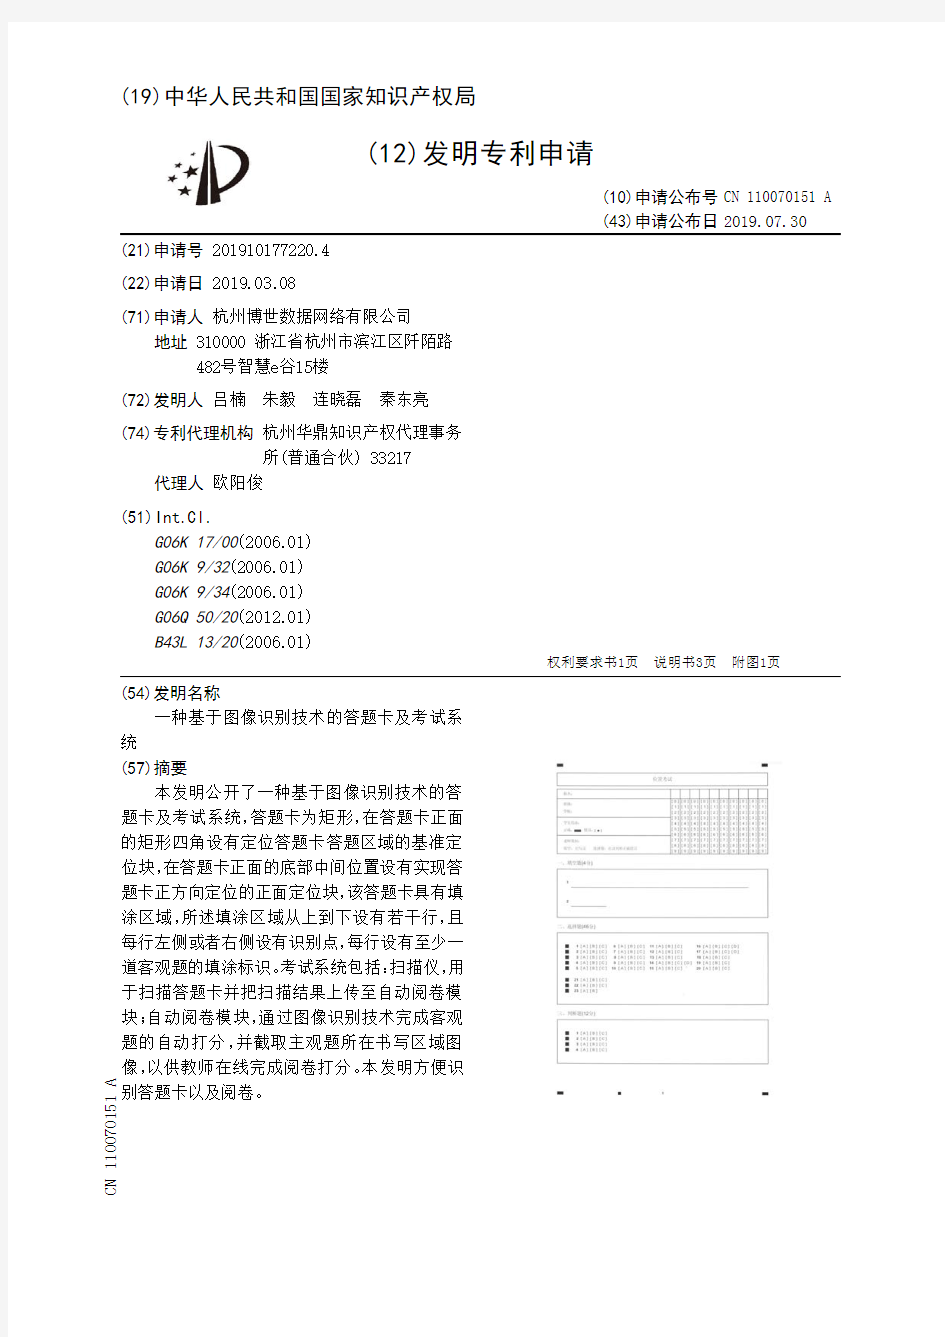 【CN110070151A】一种基于图像识别技术的答题卡及考试系统【专利】